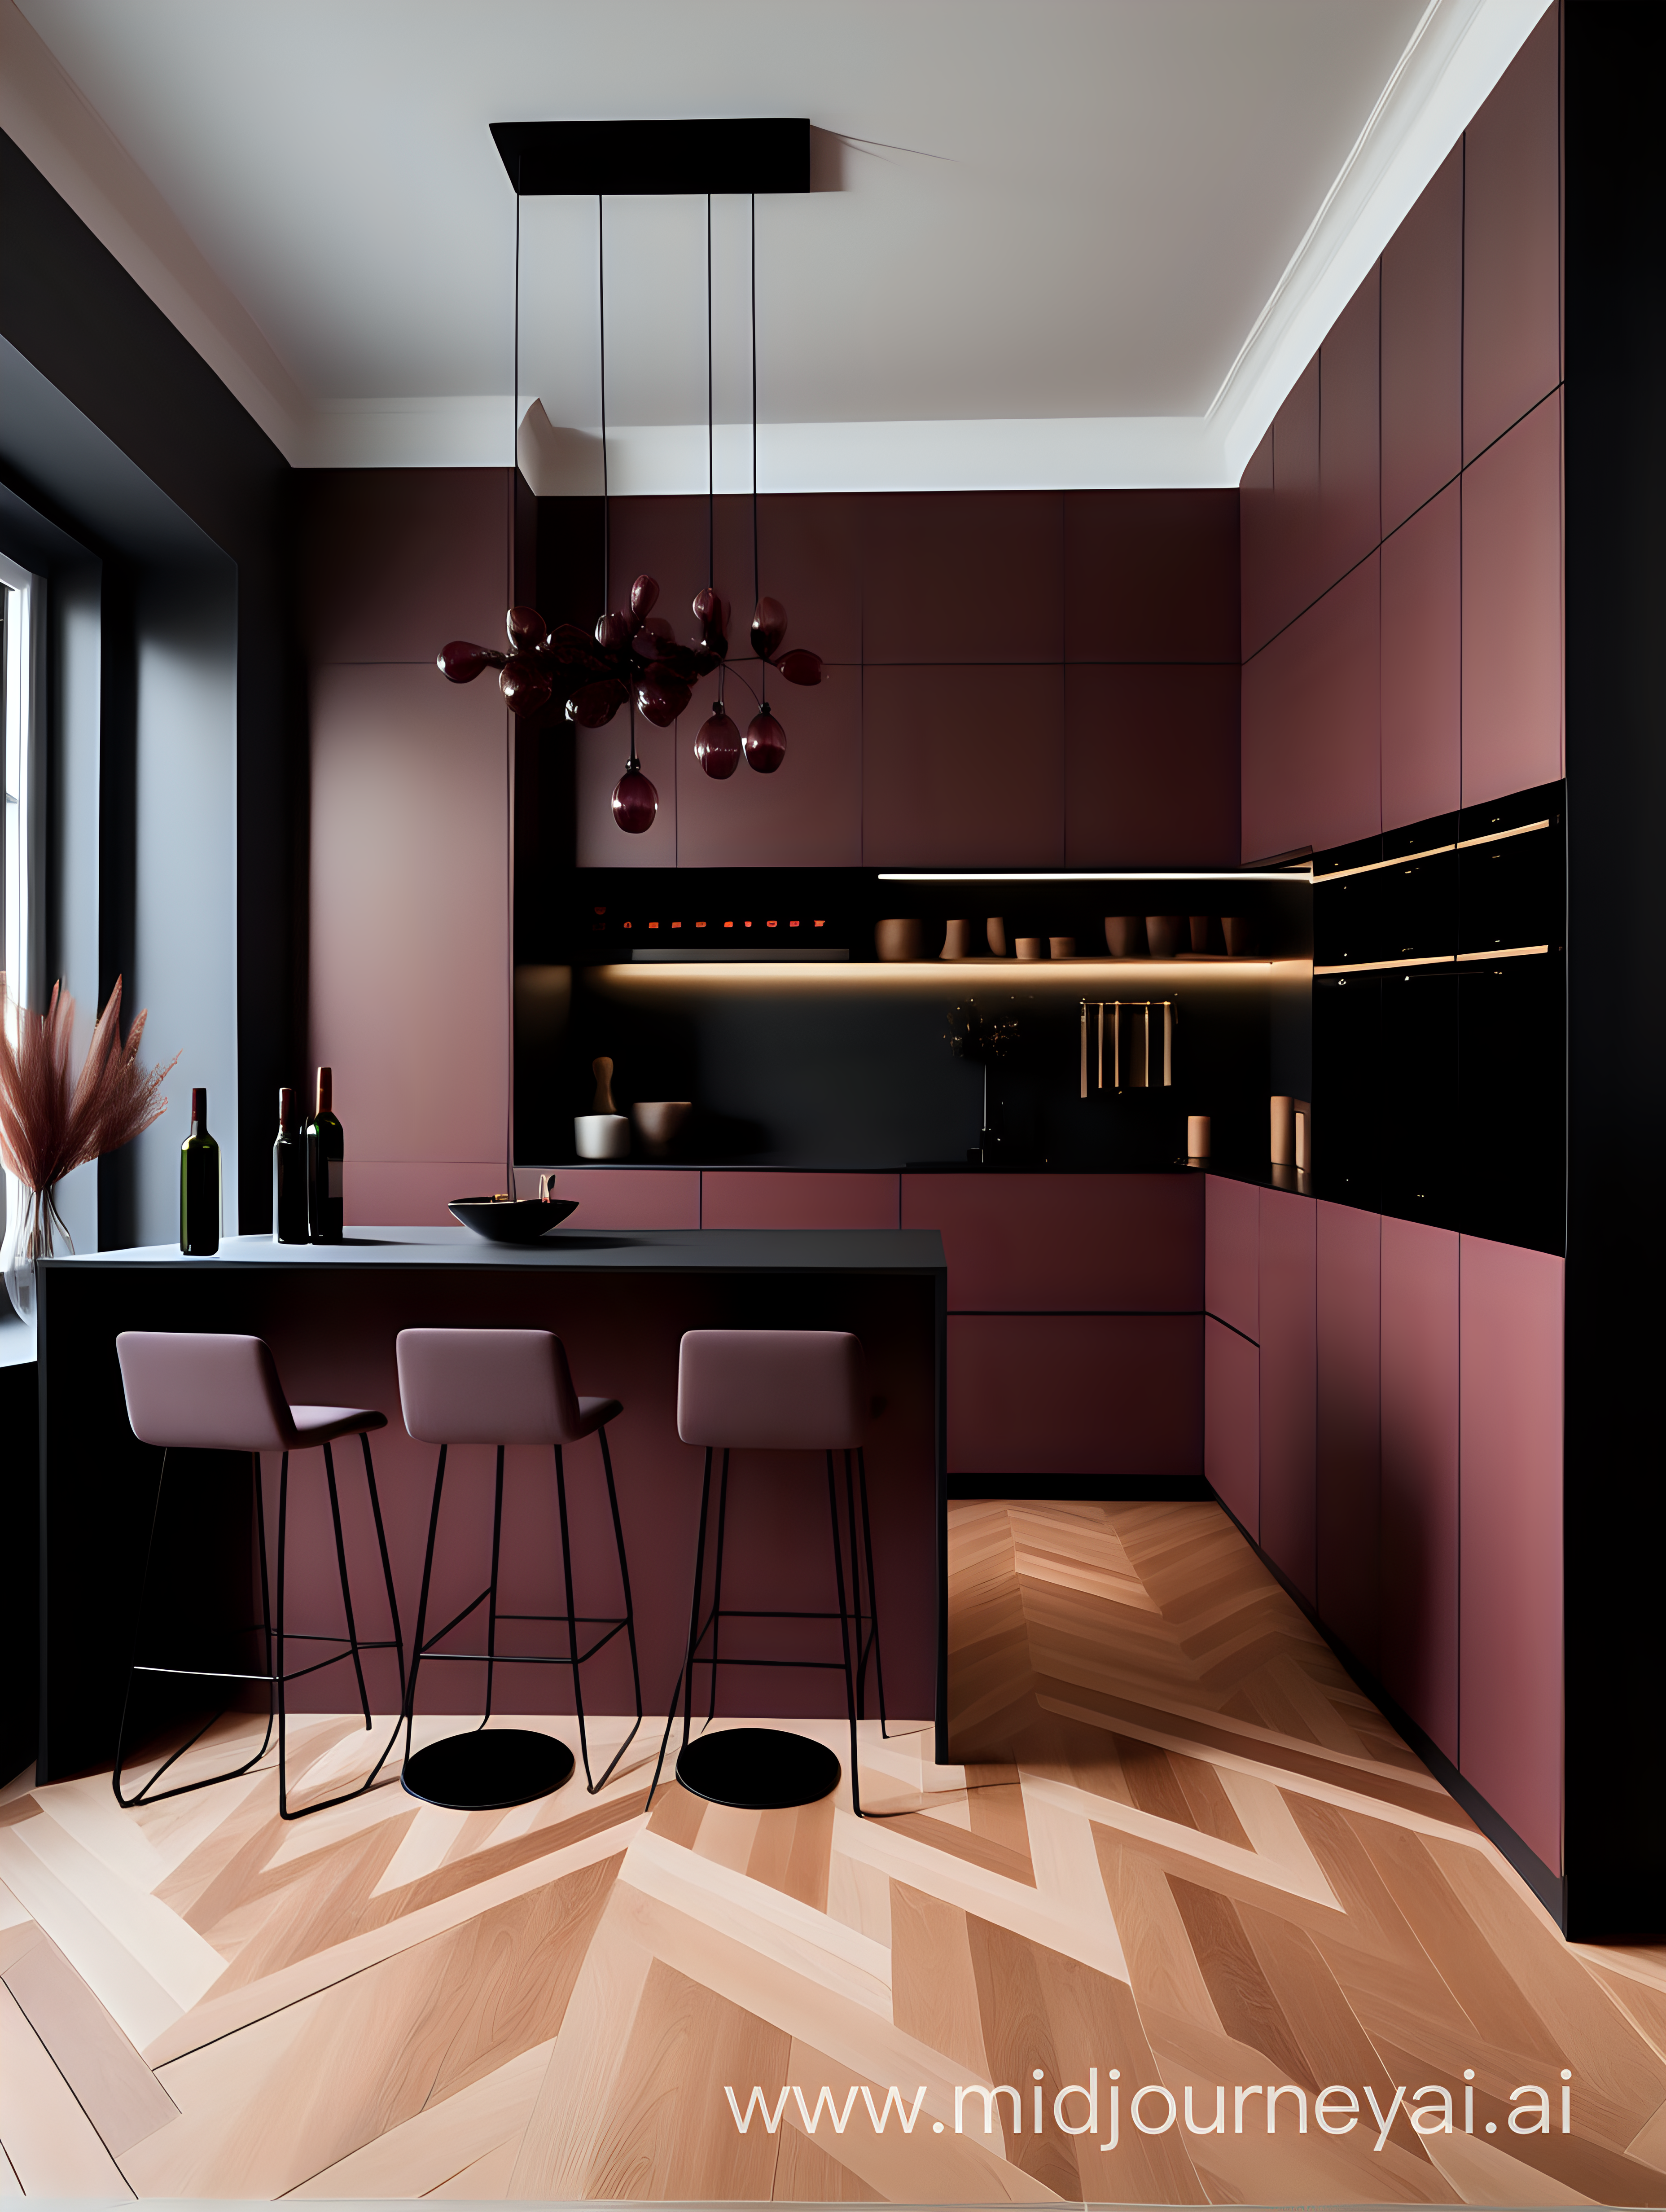 дизайн интерьера в стиле минимализм с кухней винного цвета, деревянным паркетом елочкой, и черным светильником
